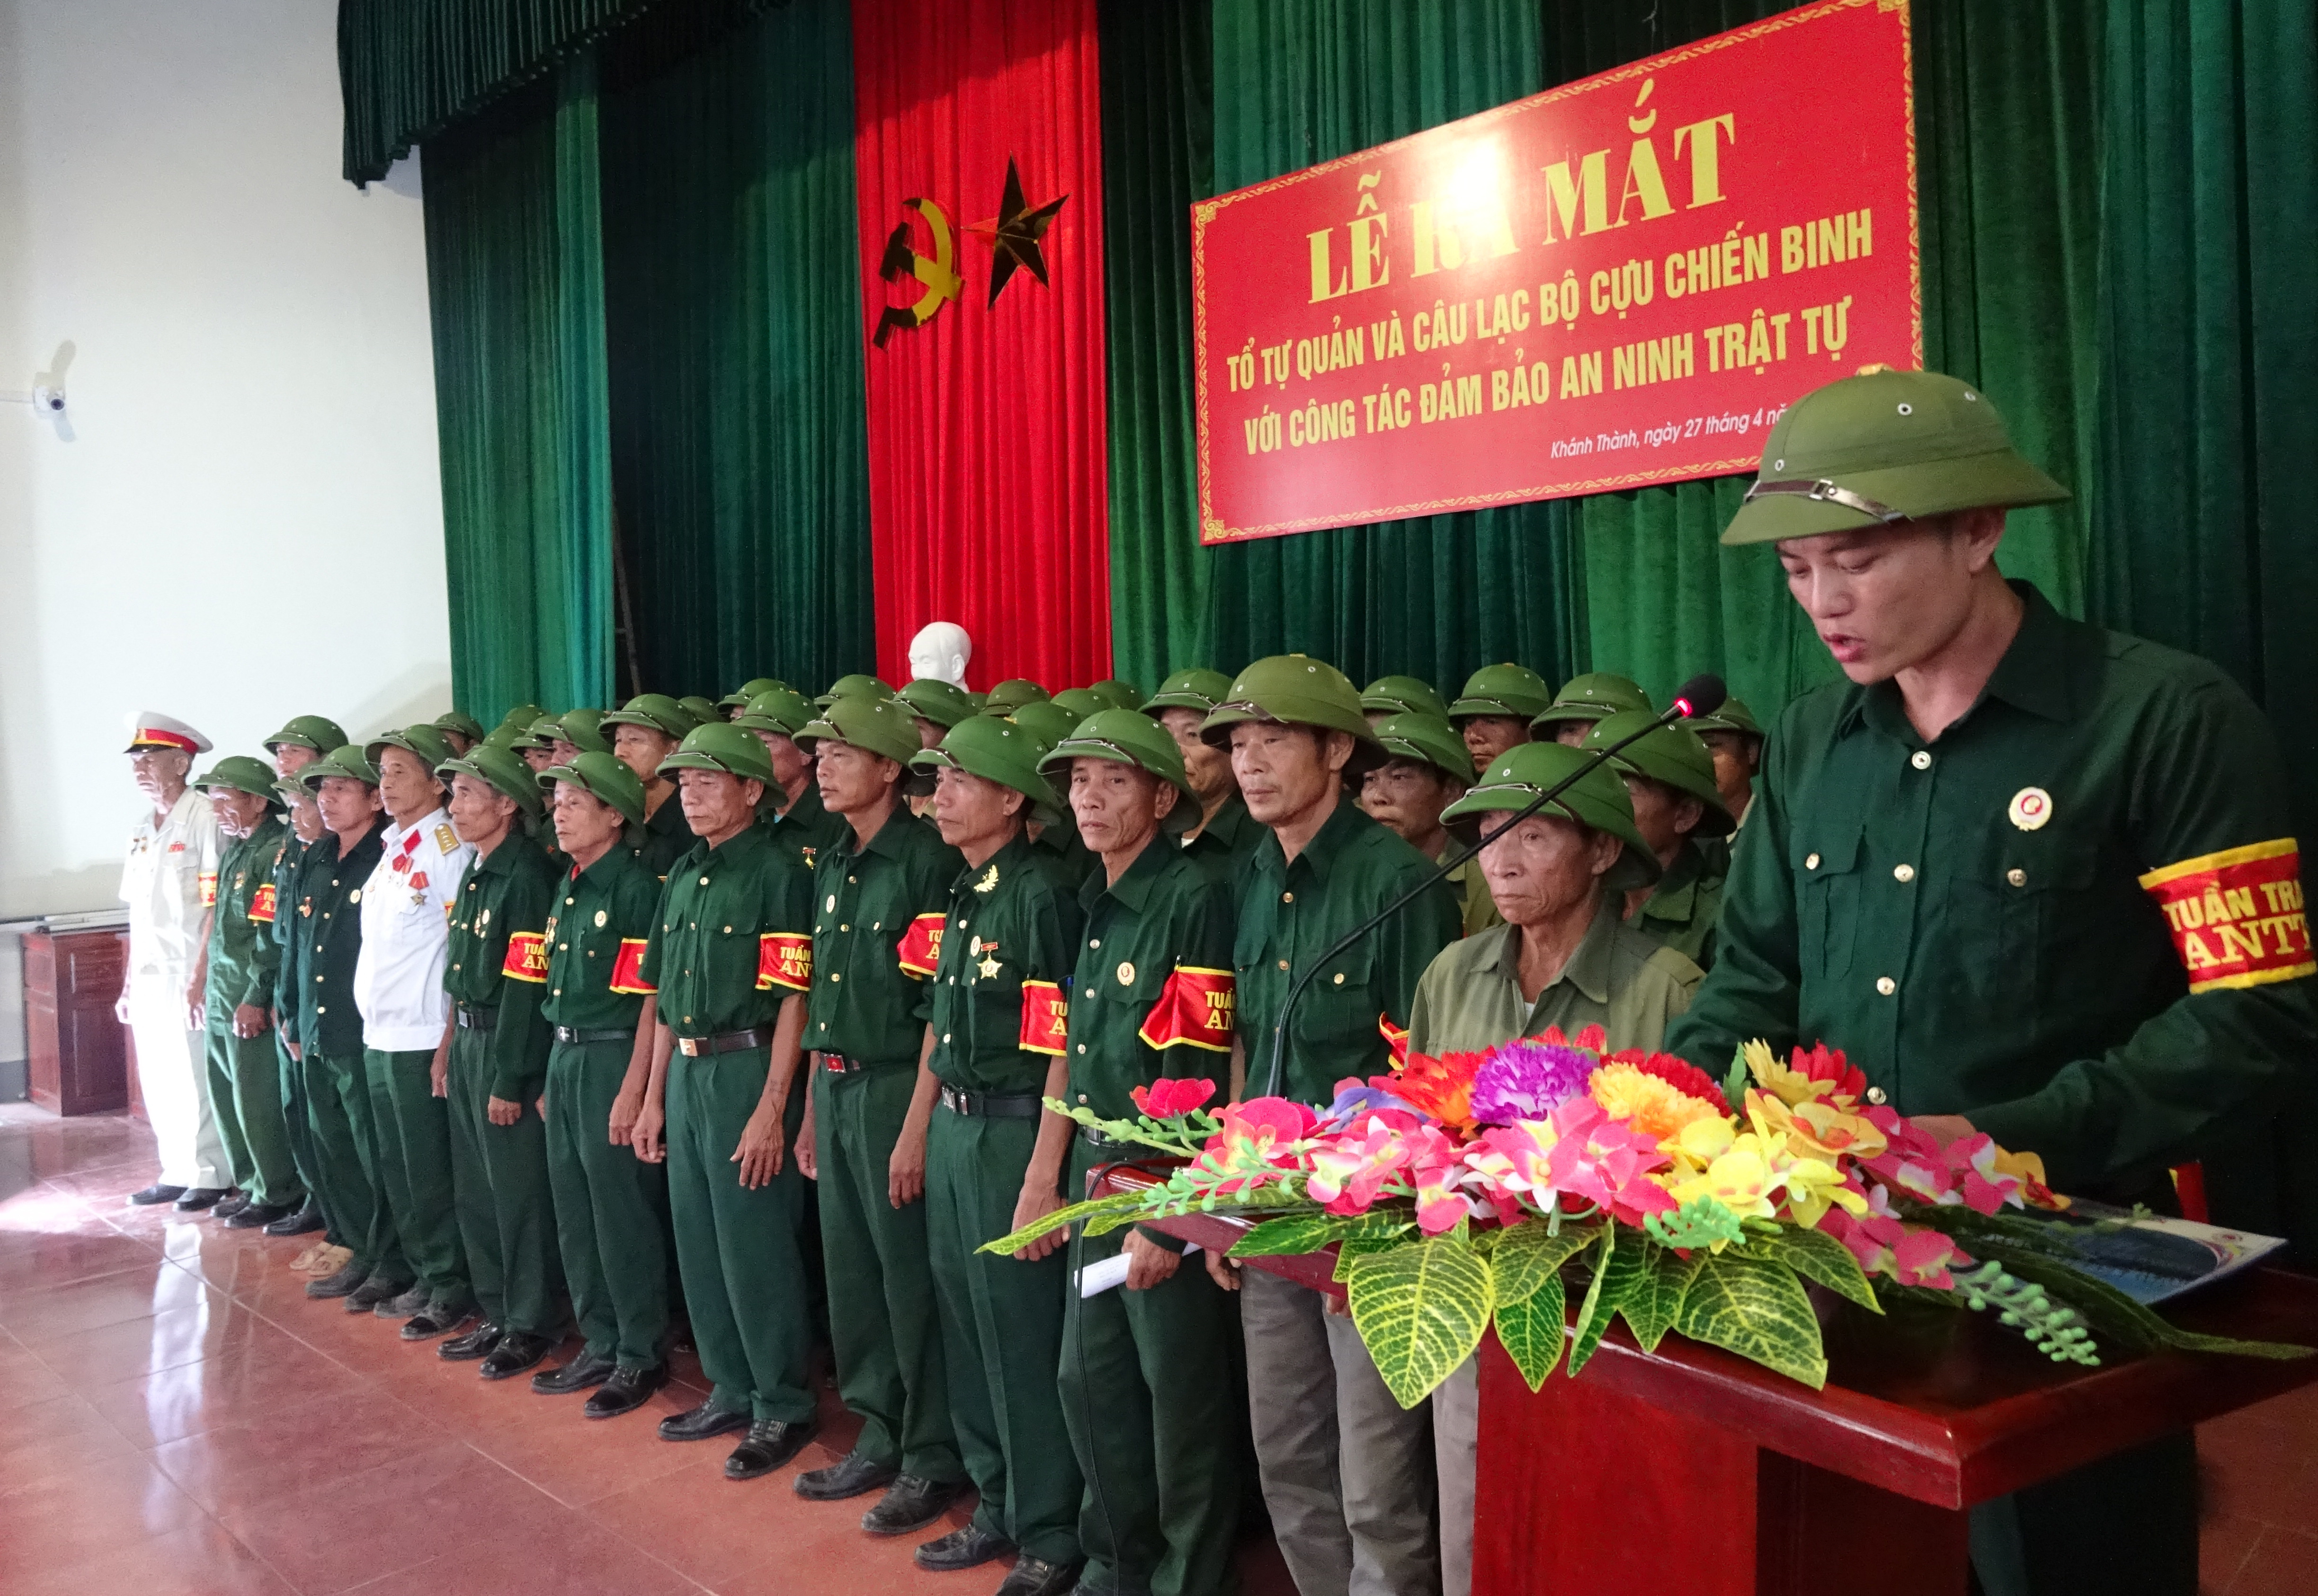 50 thành viên của Câu lạc bộ Cựu chiến binh với công tác đảm bảo an ninh trật tự xã Khánh Thành. Ảnh: Thái Hồng